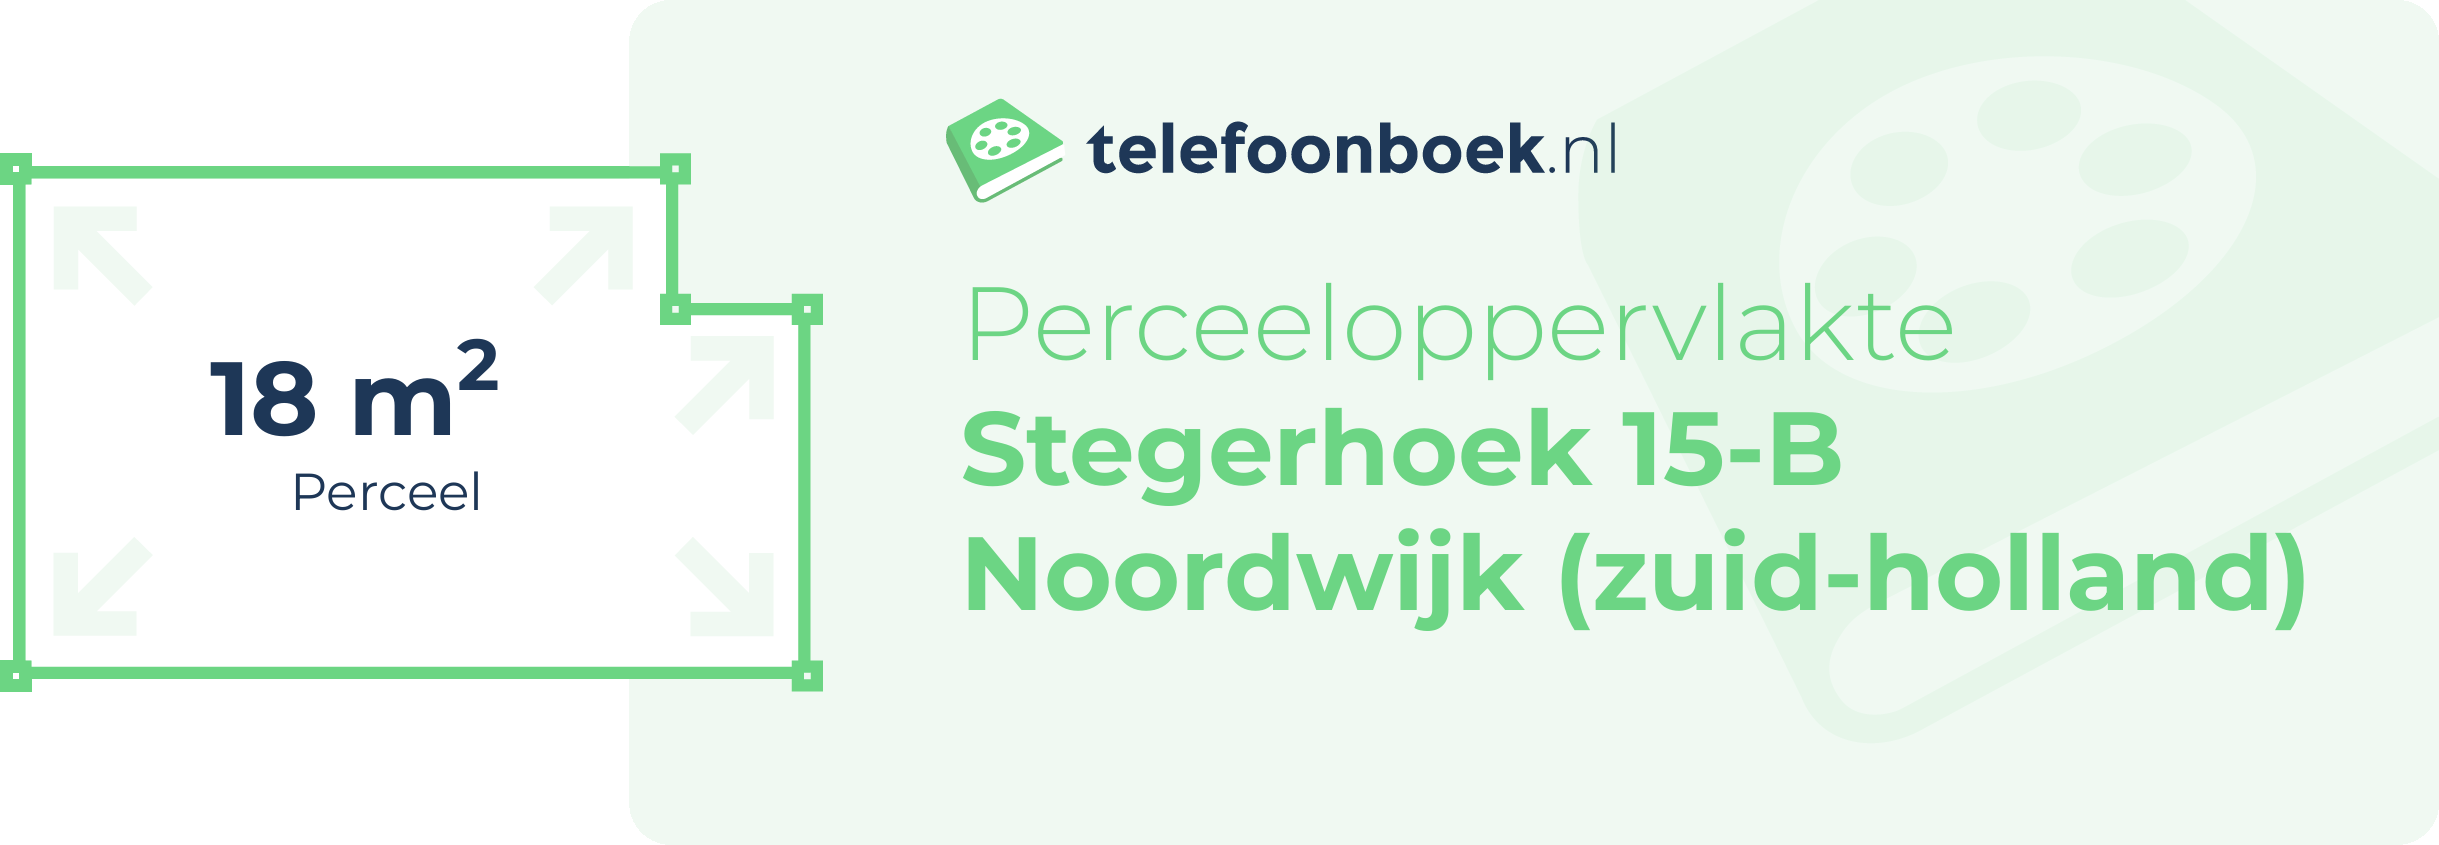 Perceeloppervlakte Stegerhoek 15-B Noordwijk (Zuid-Holland)